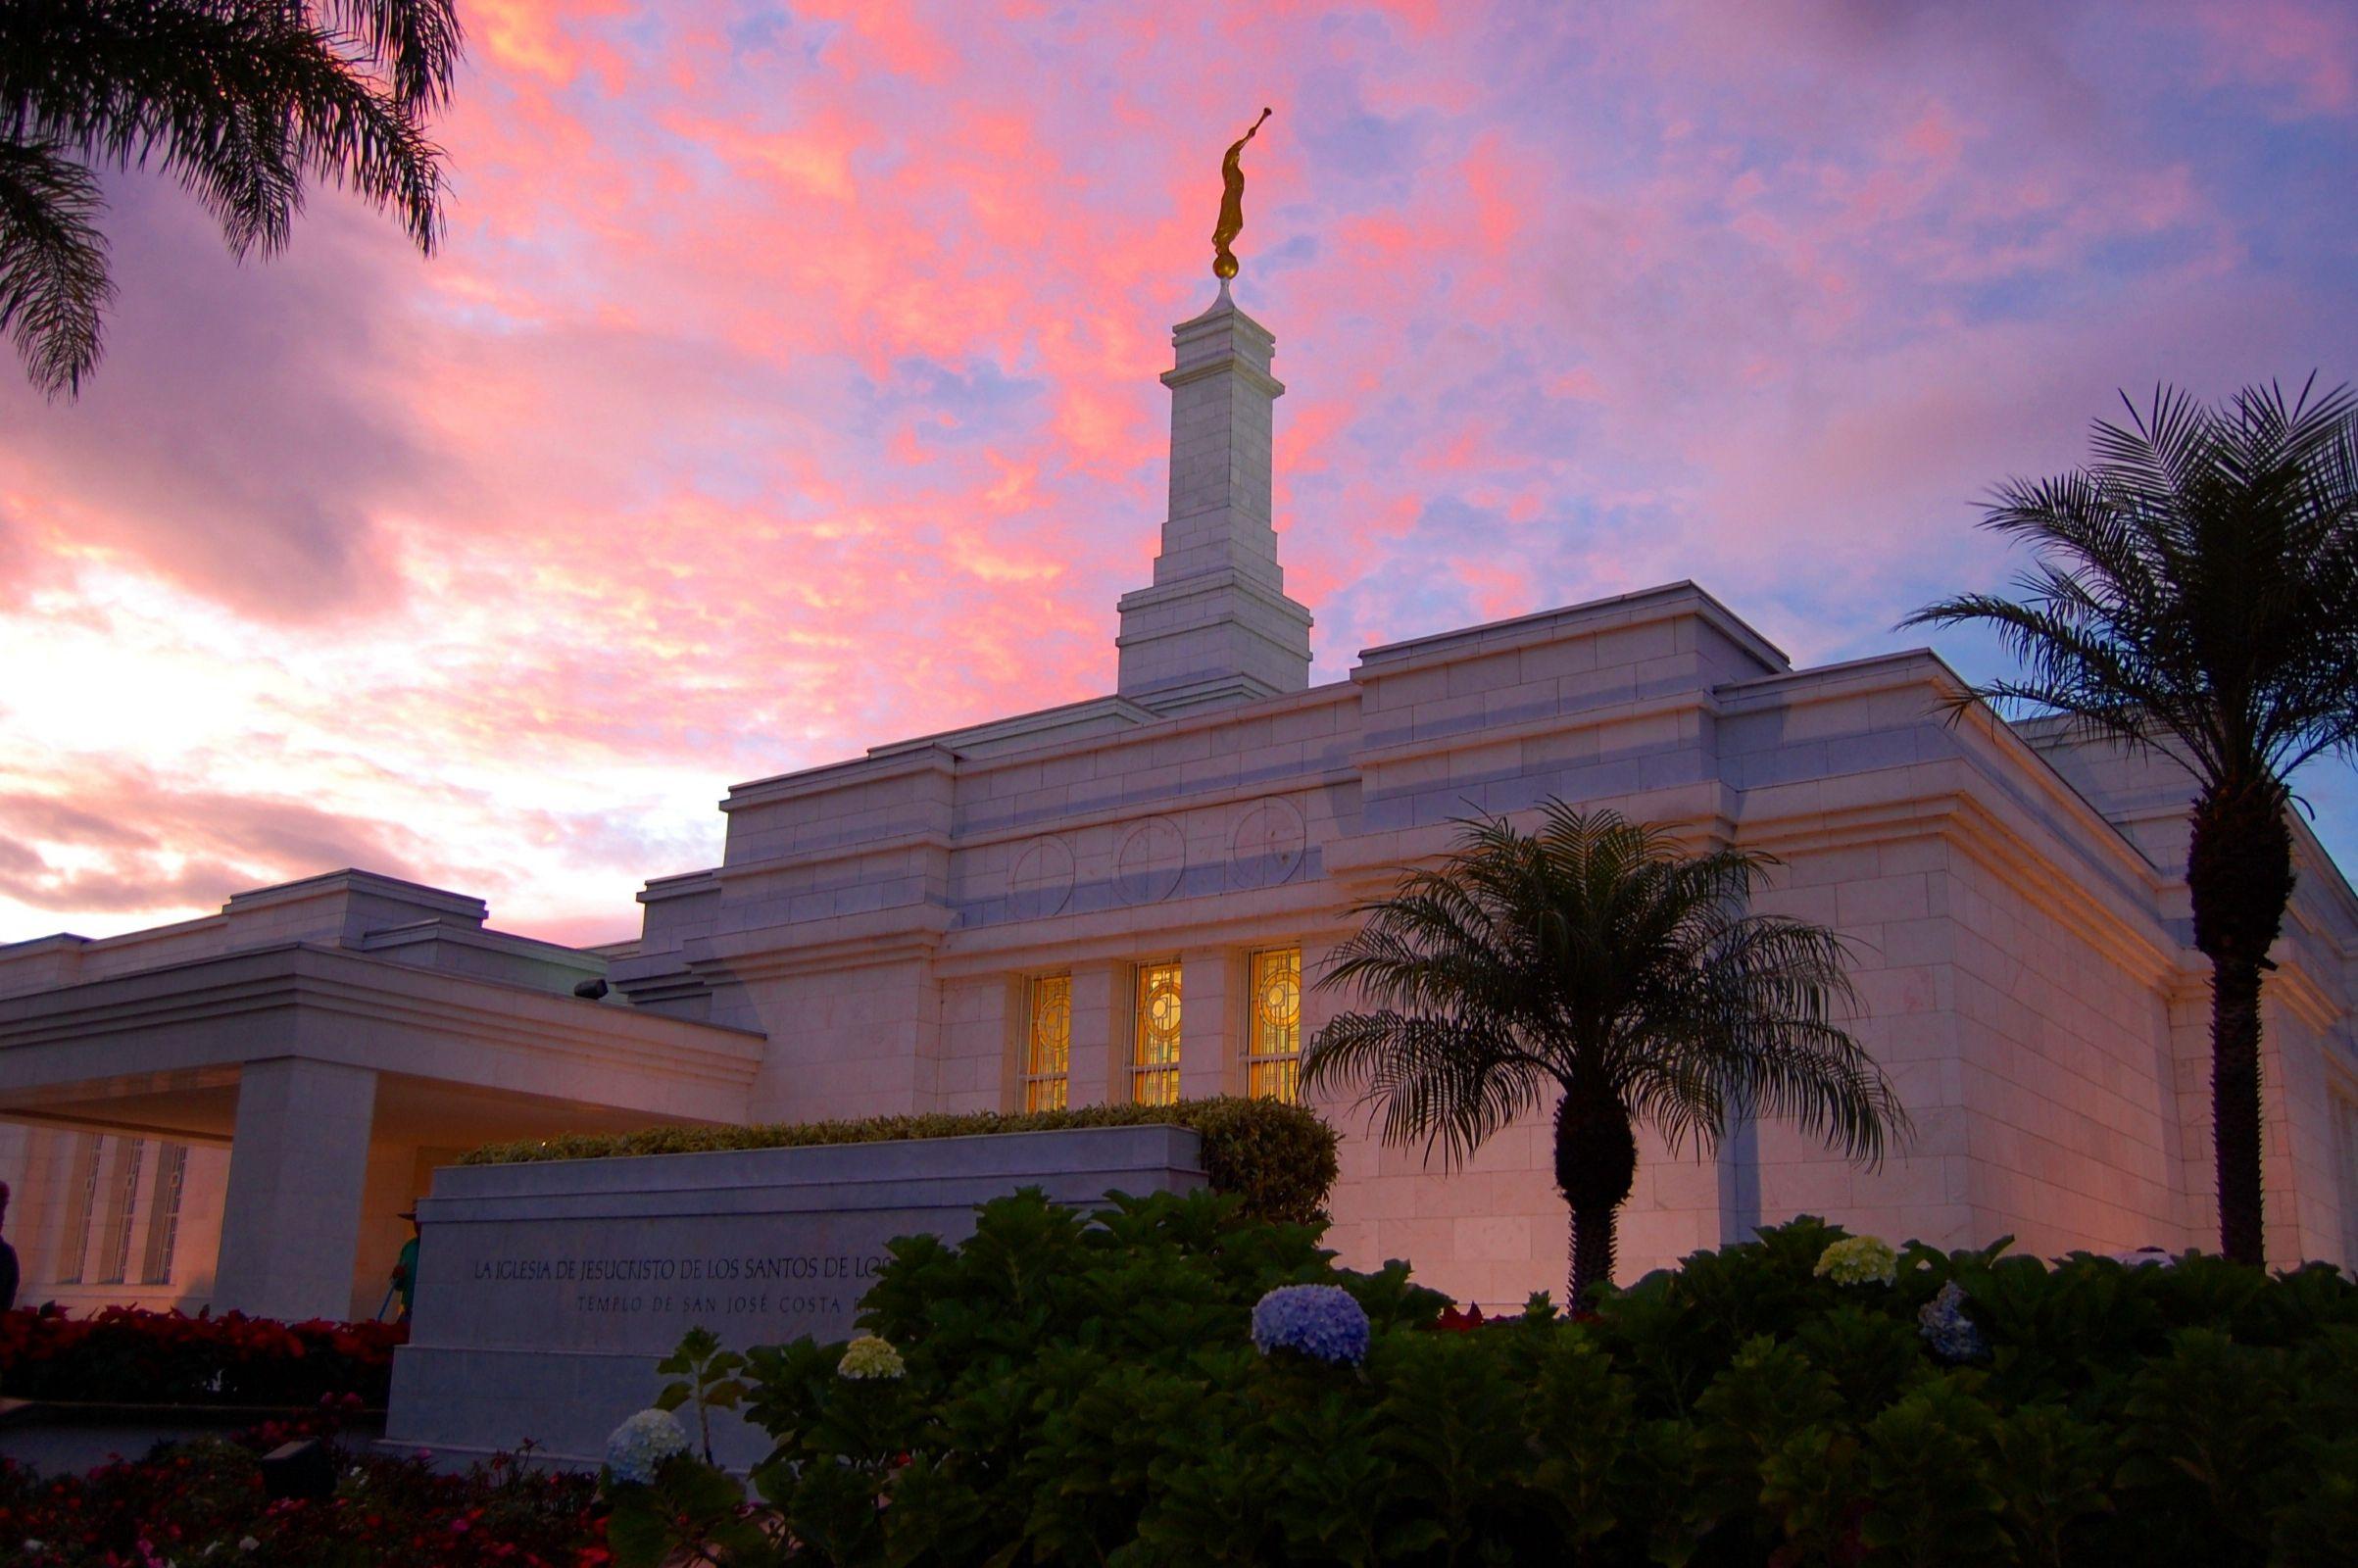 San José Costa Rica Temple at Sunset